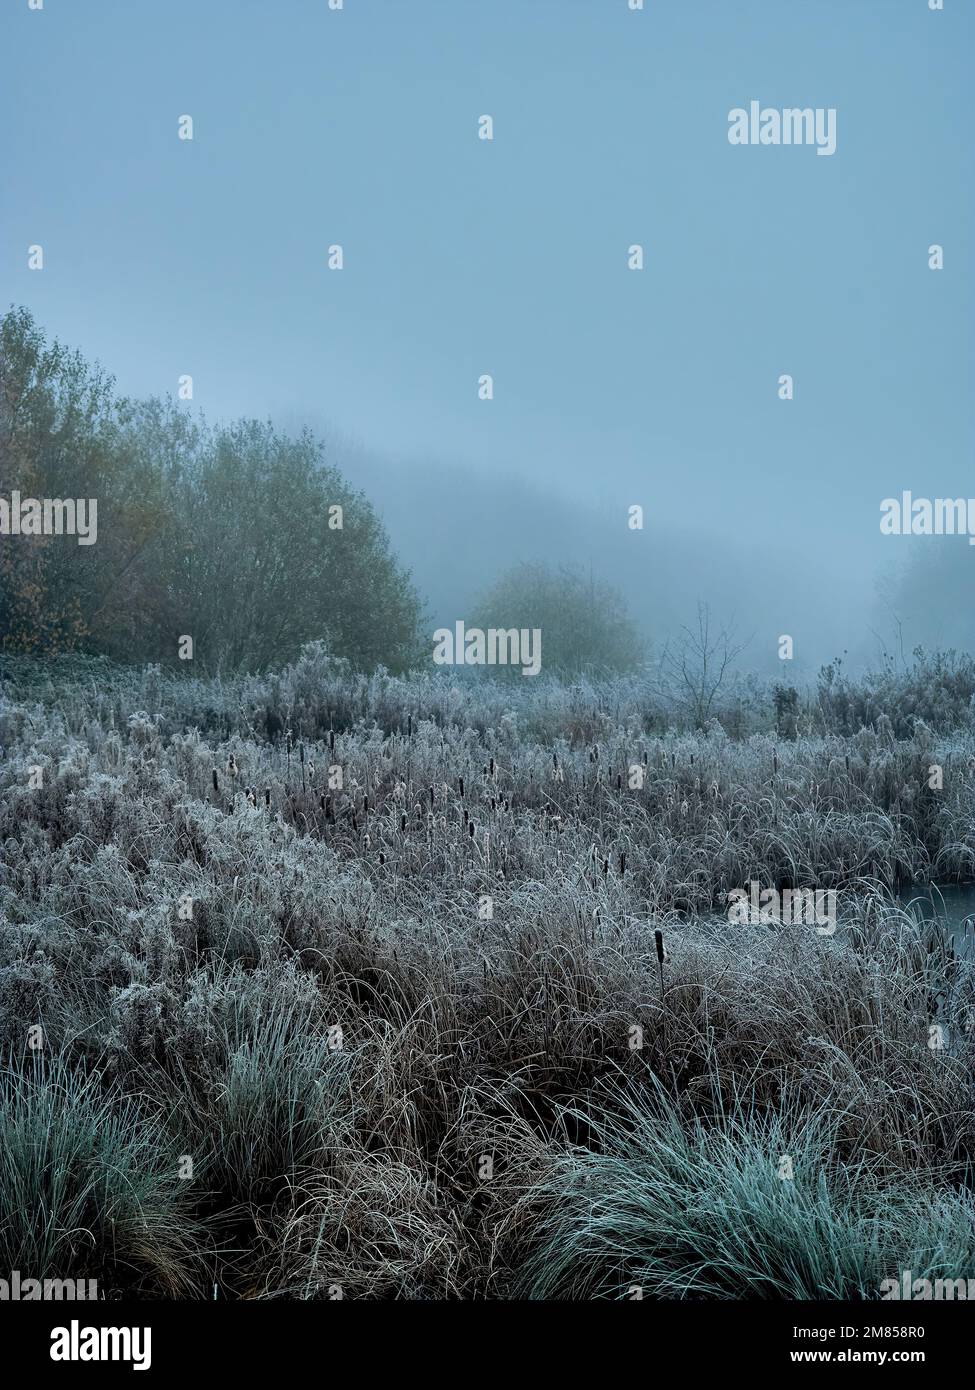 Winterankunft im Vereinigten Königreich: Am See rauscht und Schilf schweigt, während der kalte Schnapper und Nebel die vertraute Landschaft in einen ätherischen, liminalen Raum verwandelt. Stockfoto